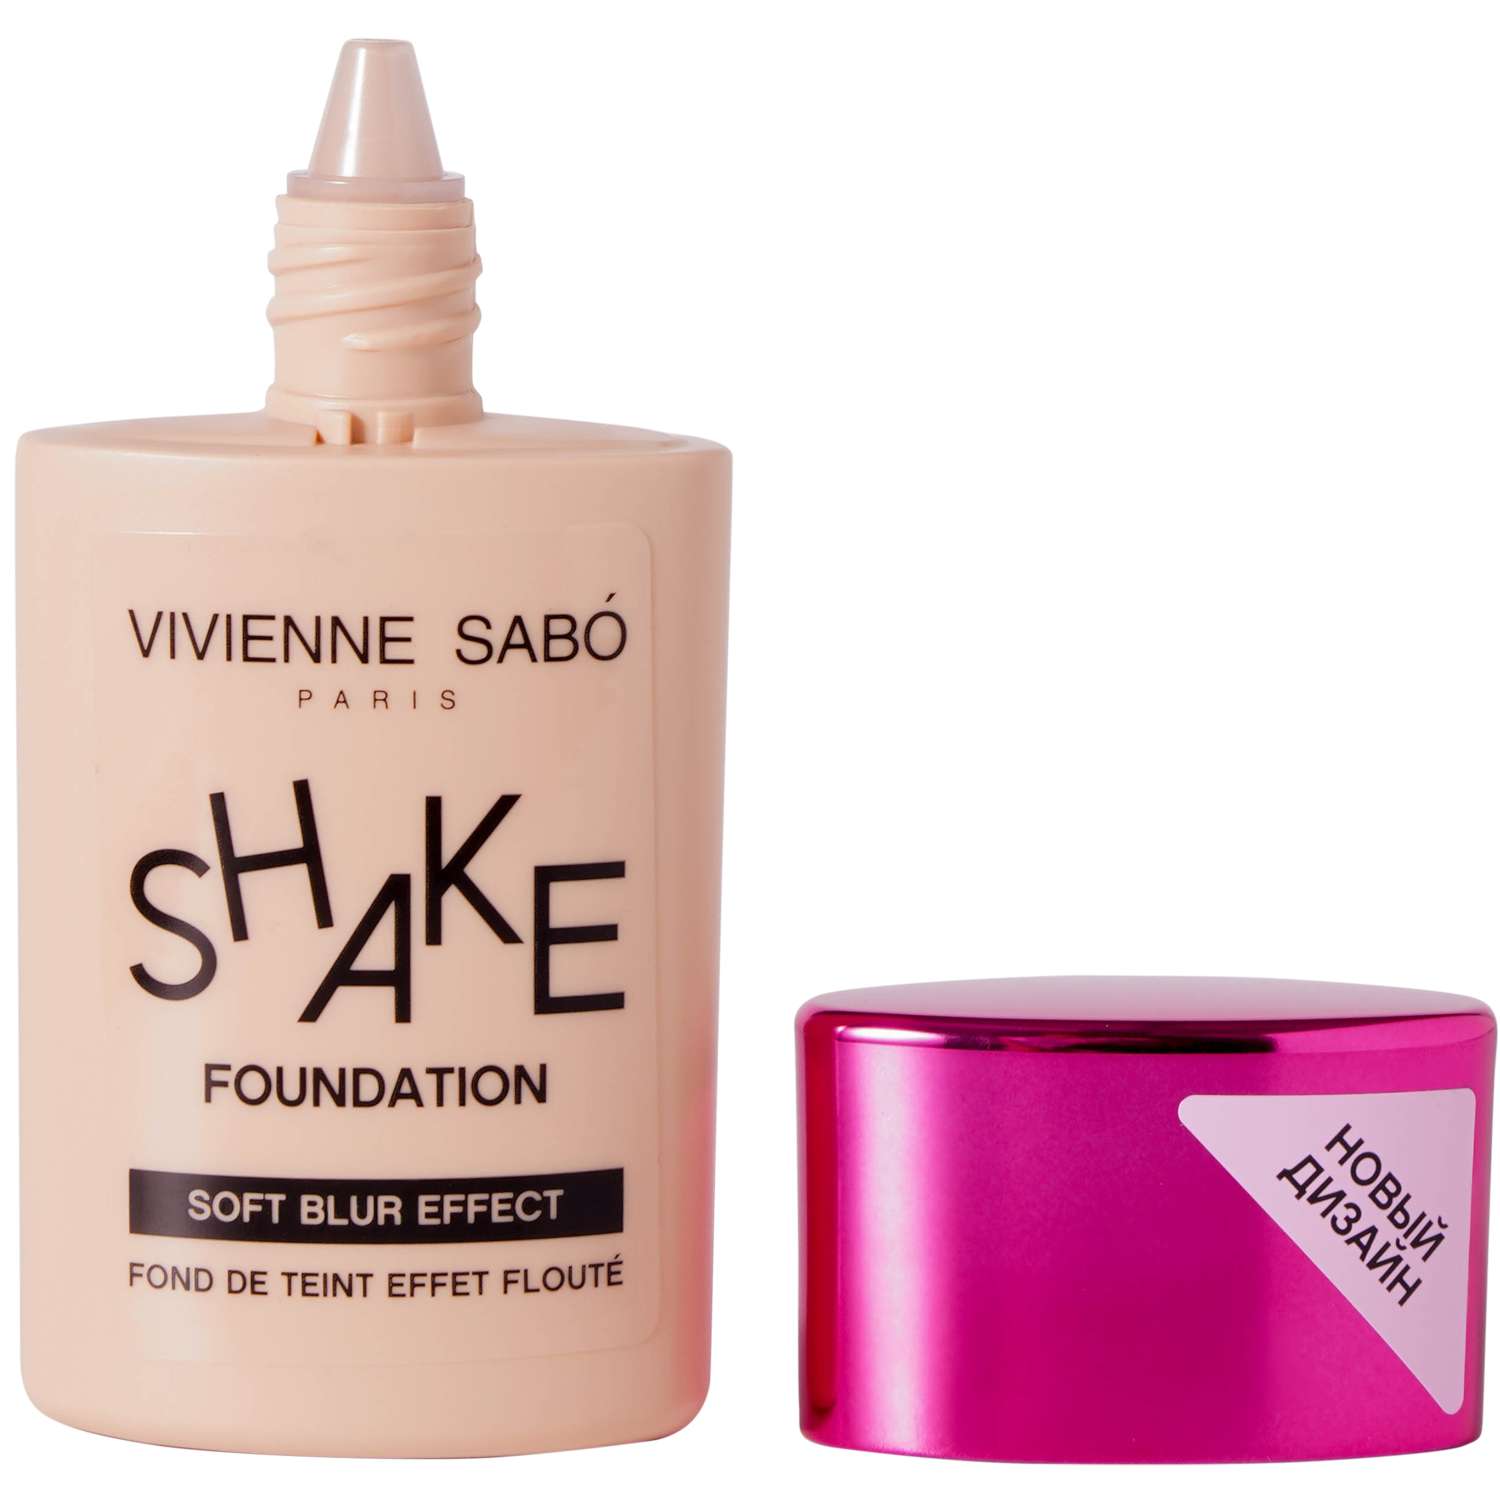 Тональный крем Vivienne Sabo с натуральным блюр эффектом Shakefoundation тон 04 - фото 3